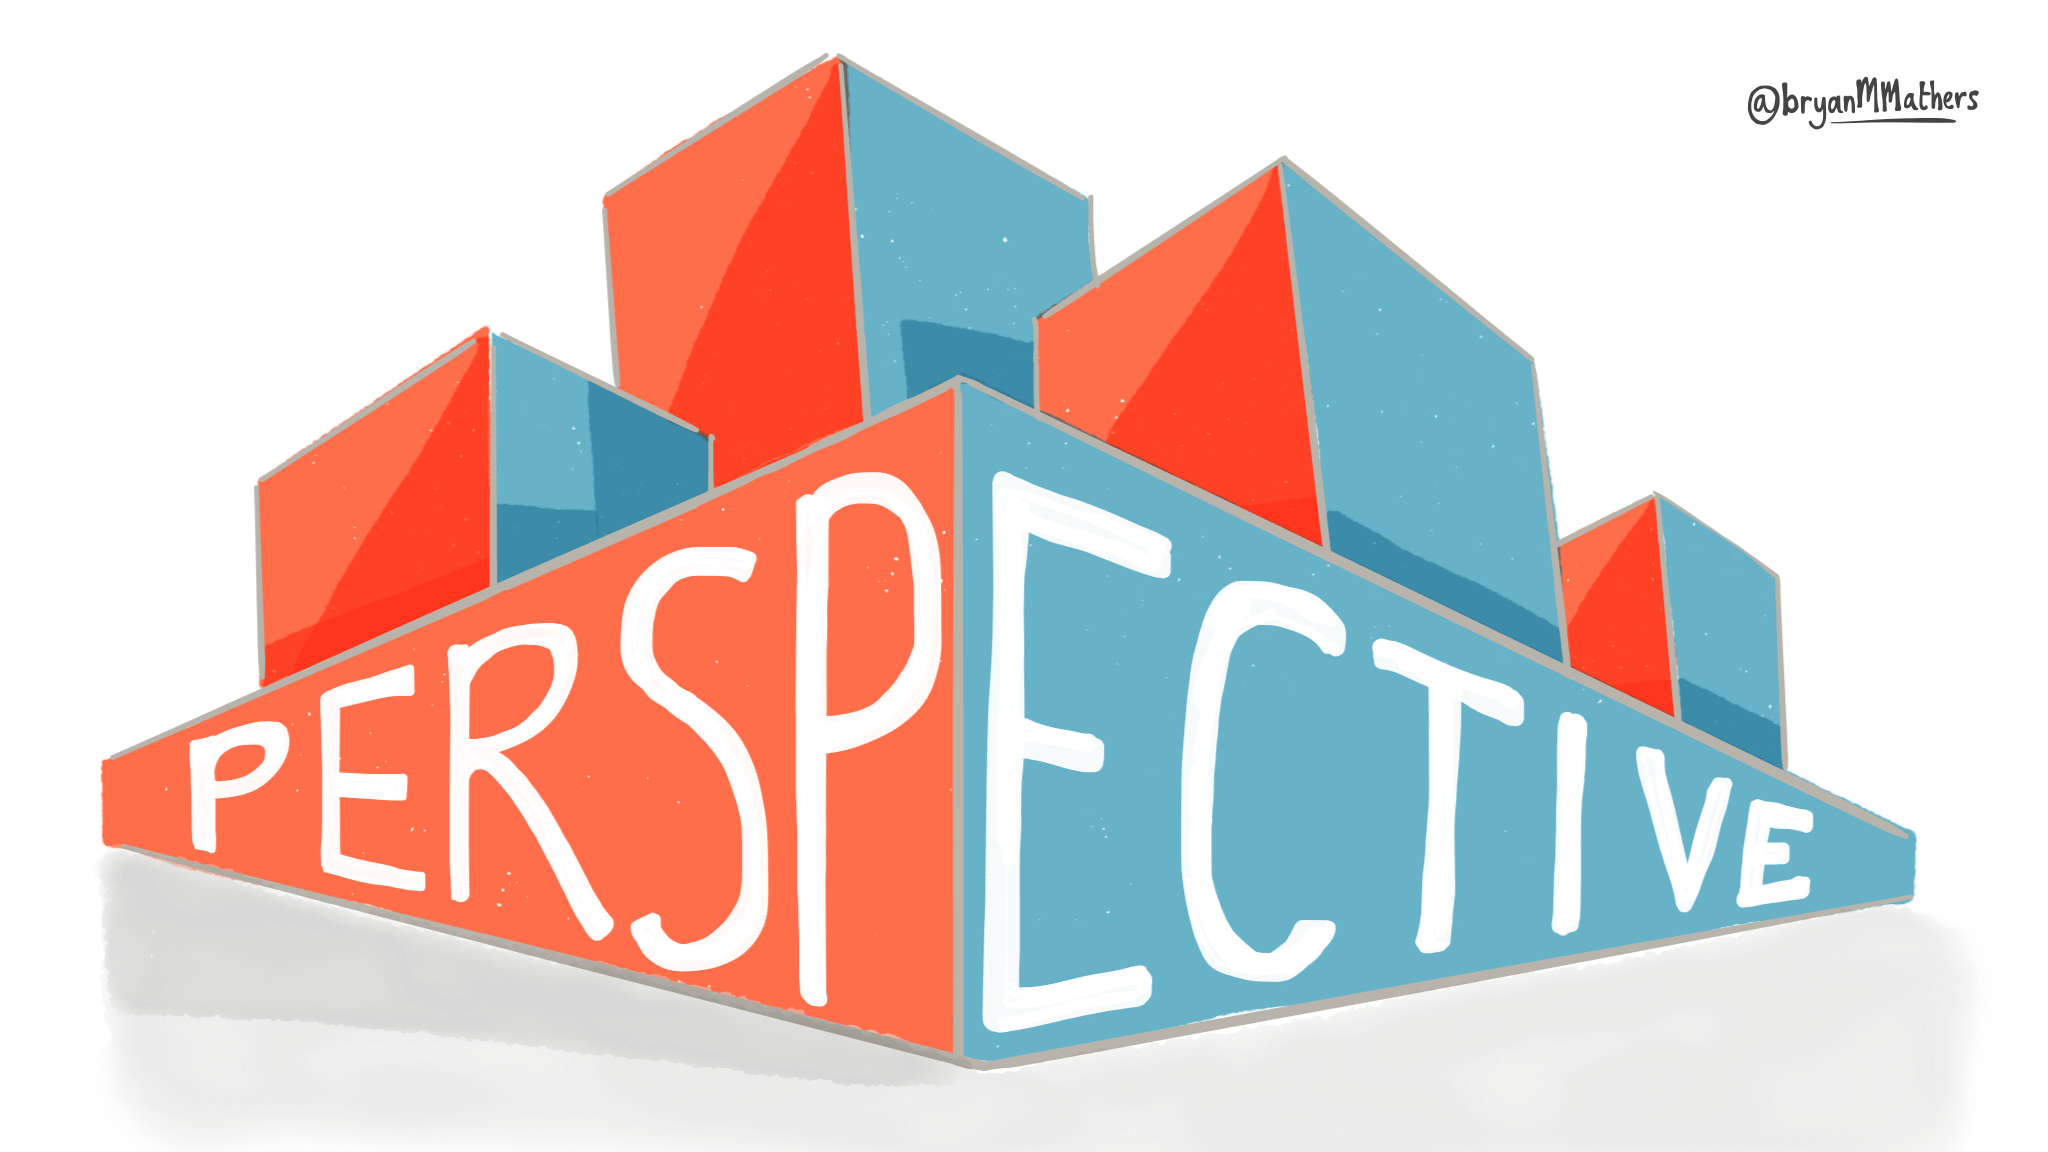 Tại sao thuộc tính perspective được coi là quan trọng trong CSS?
